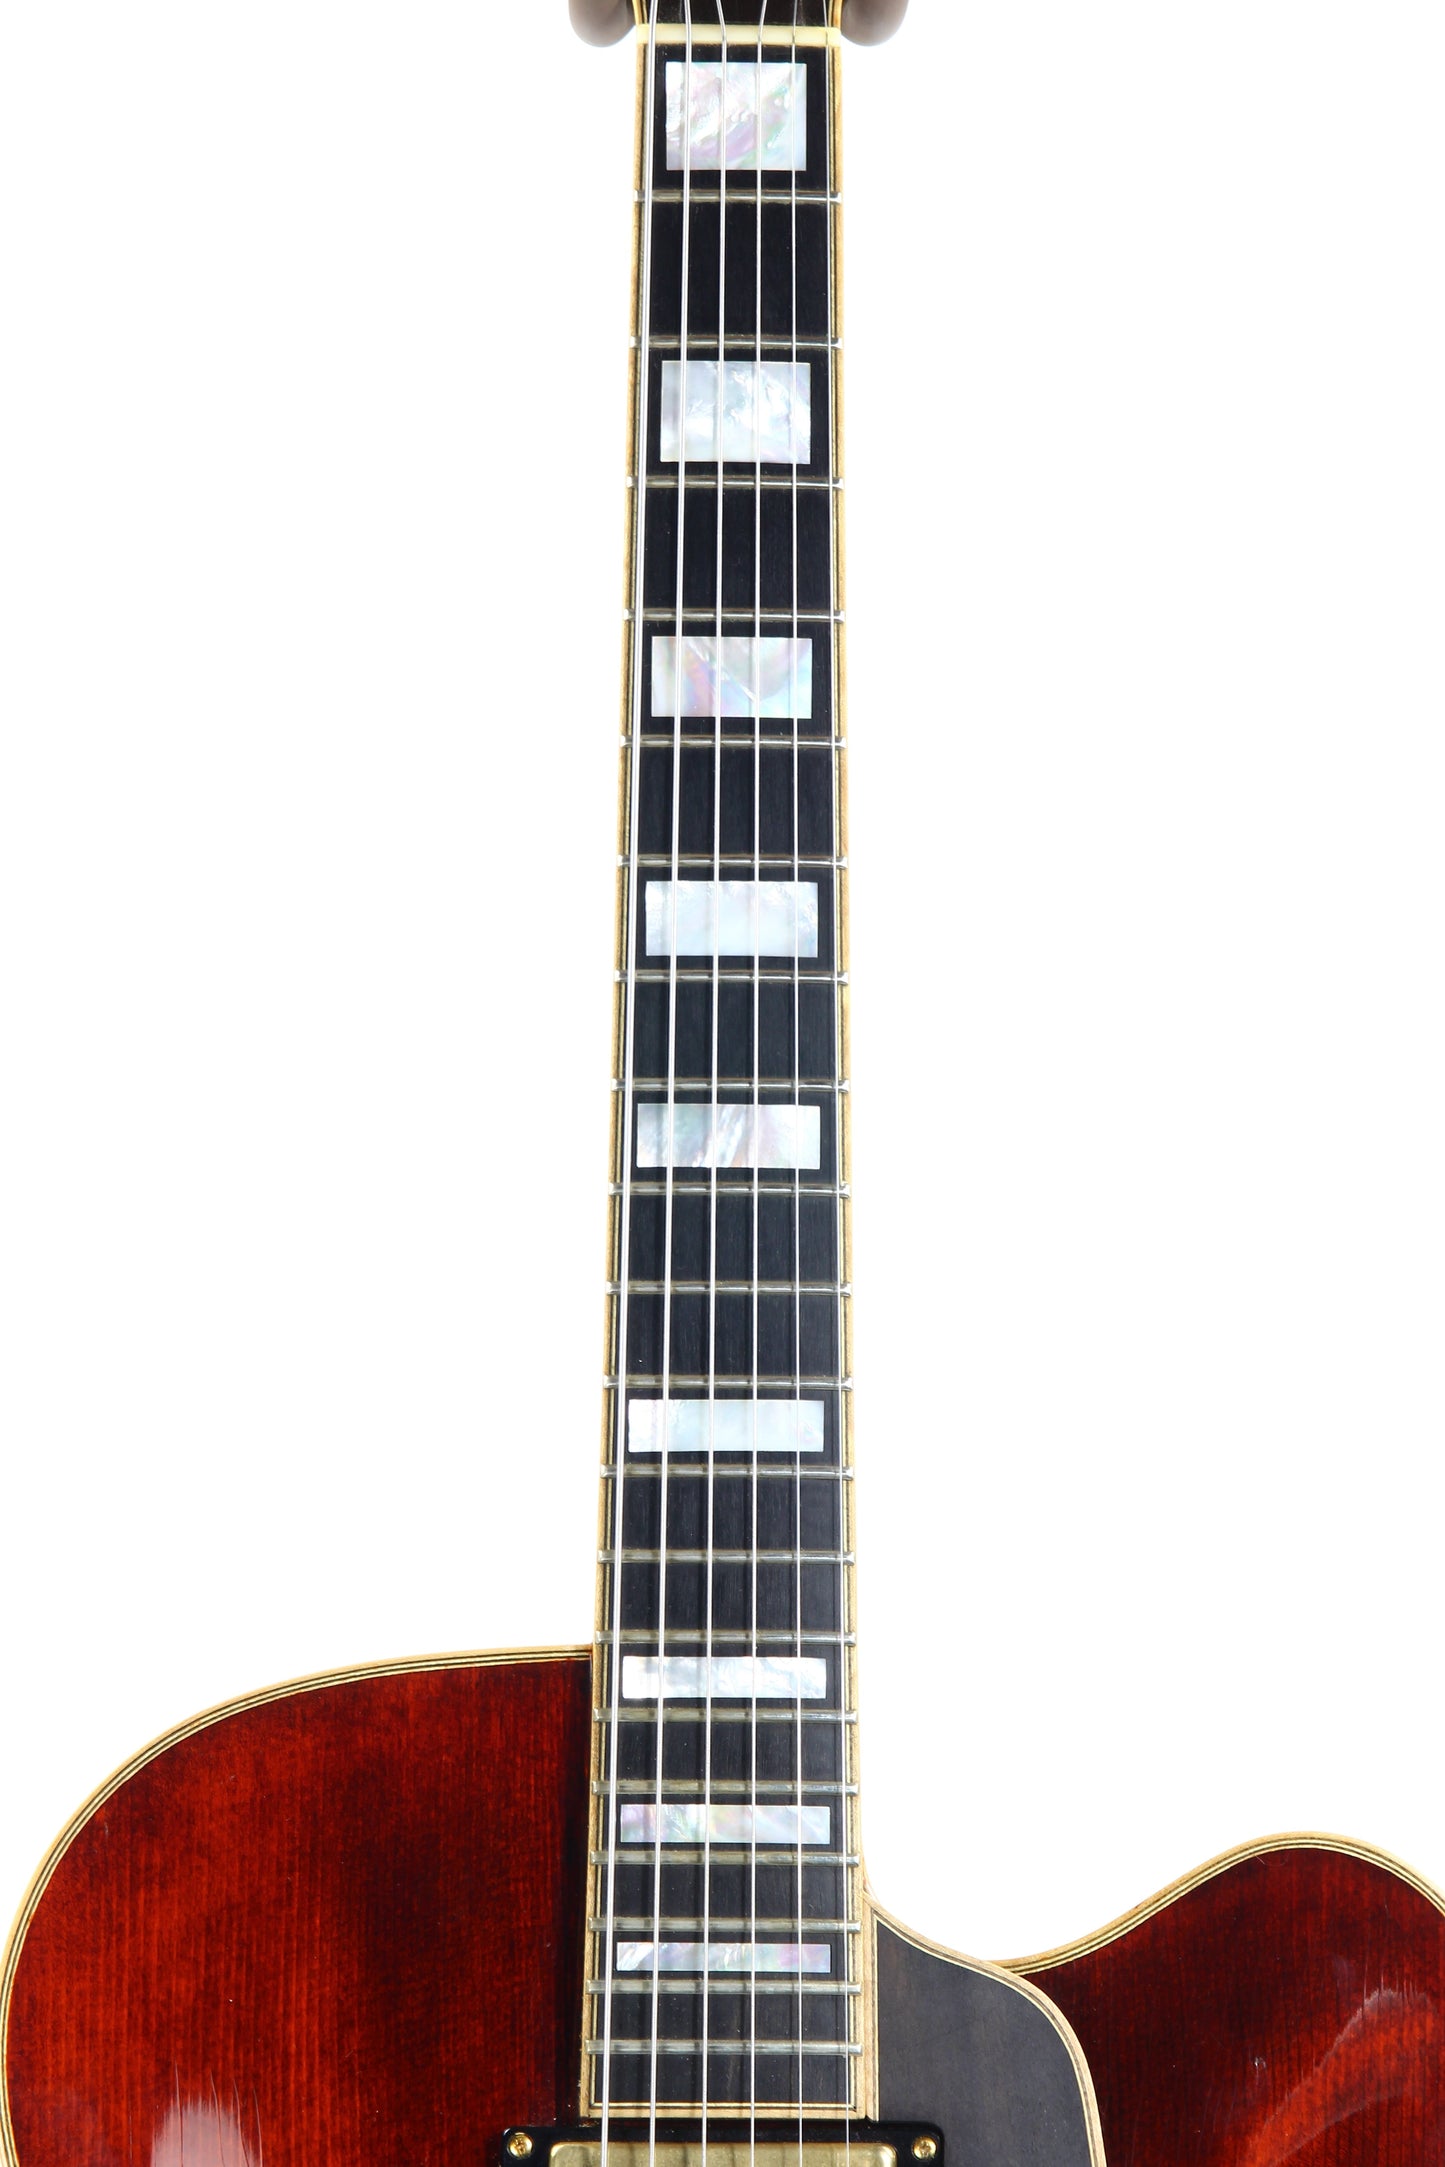 2011 Eastman Jazz Elite 16" Electric Archtop Guitar - Lollar Pickup, Schaller Tuners, MOP Inlays, Ebony Board